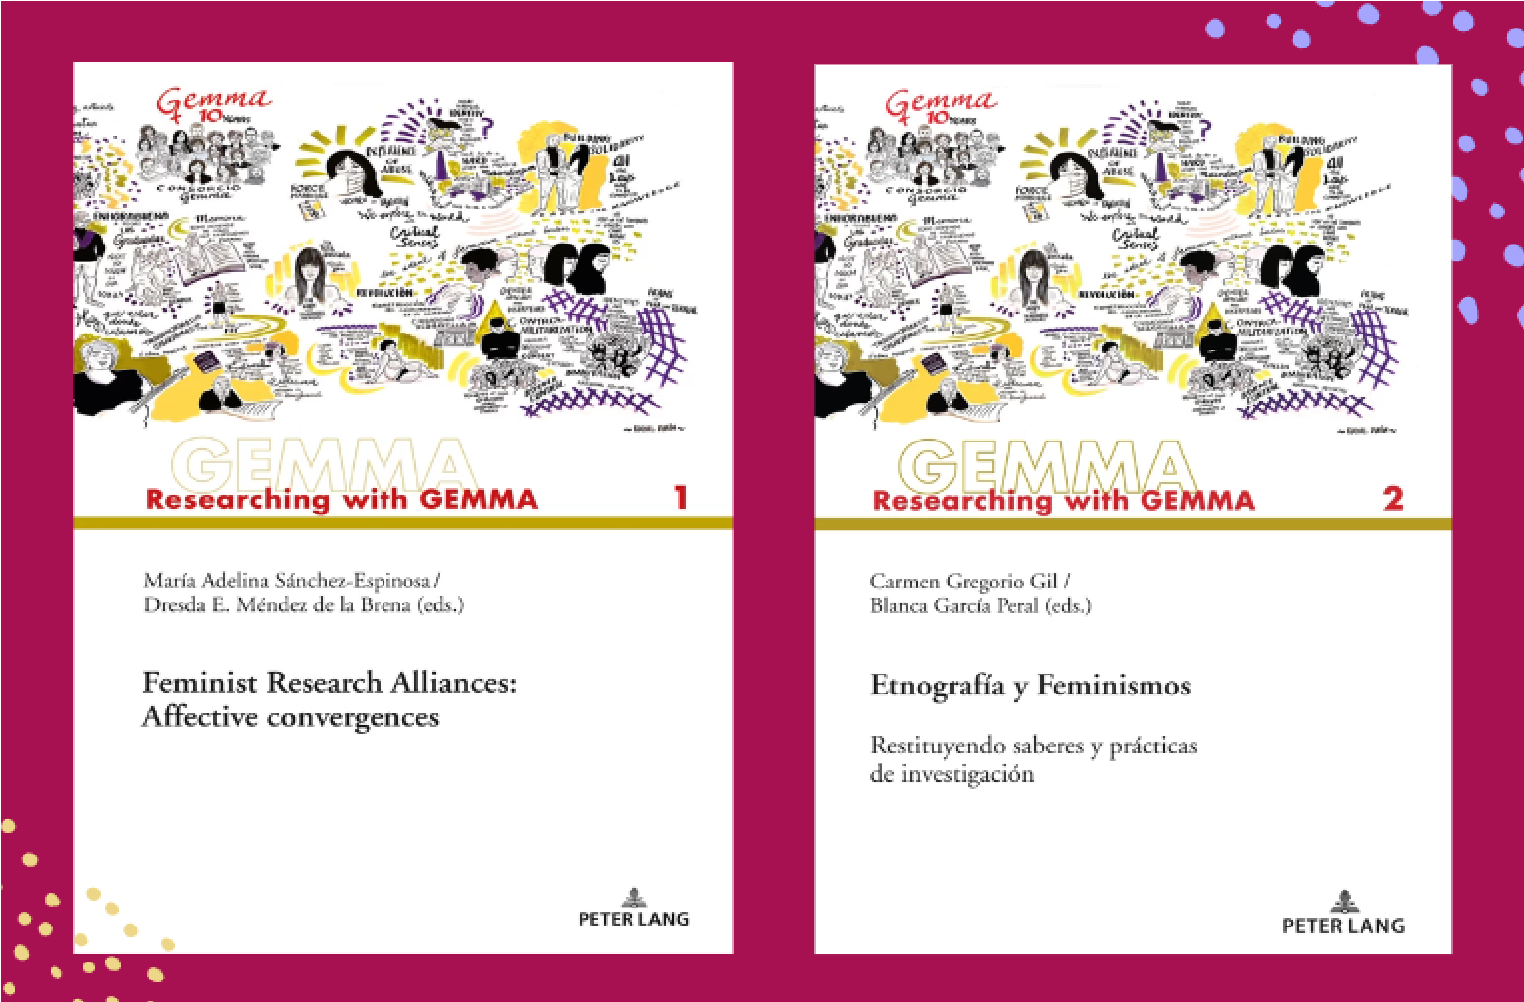  portada de los libros affective convergences and etnografía y feminismo. s